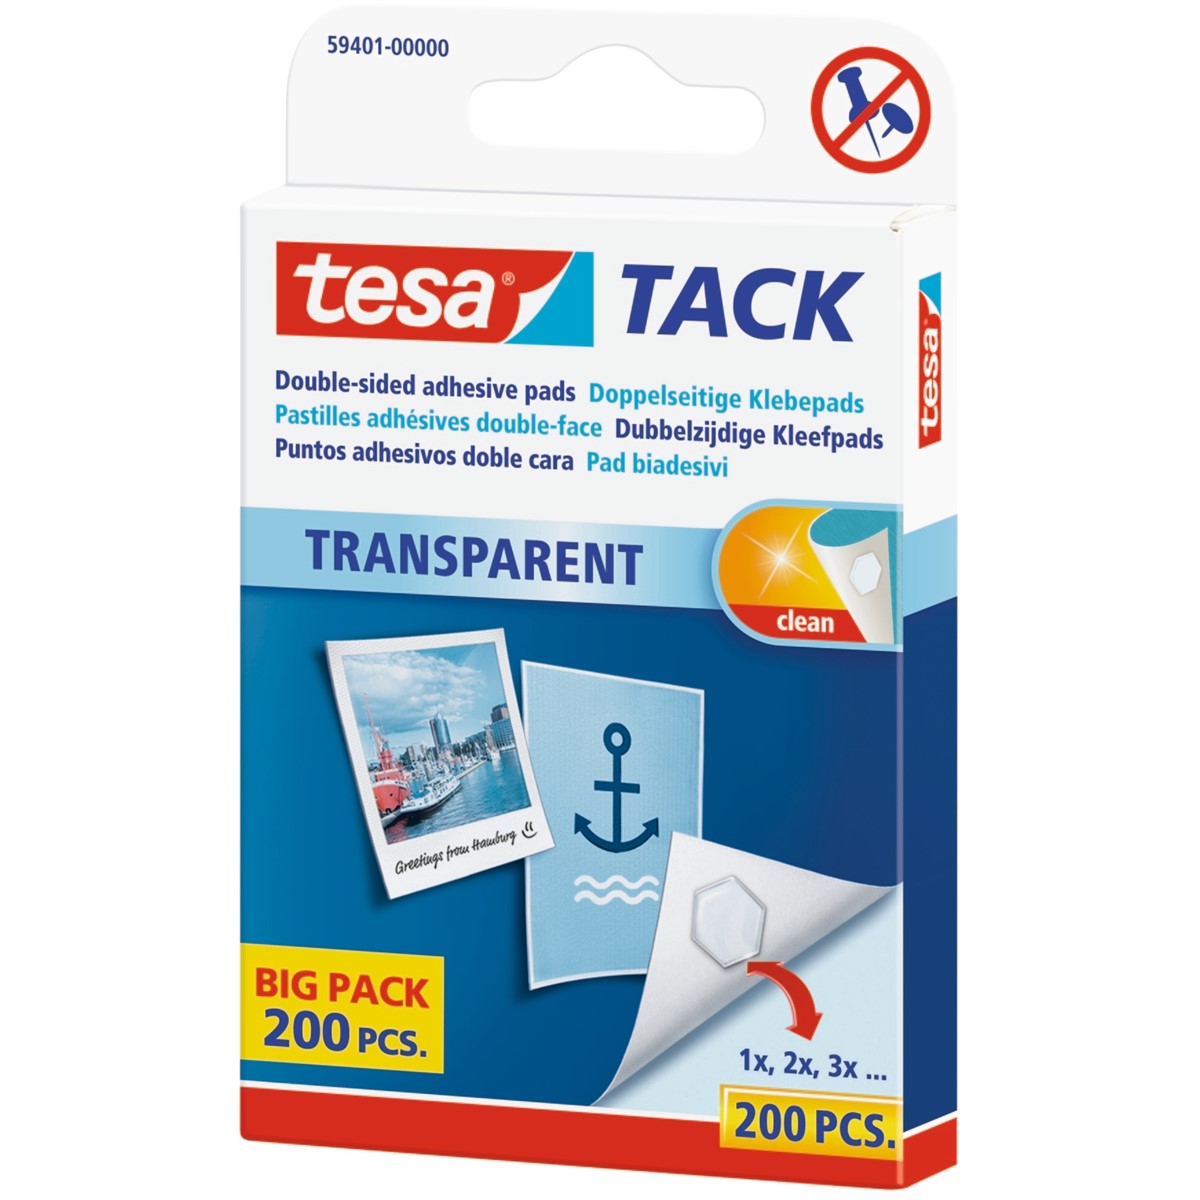 tesa 59401-00000 - TACK Big Pack, 200 Stück, transparent